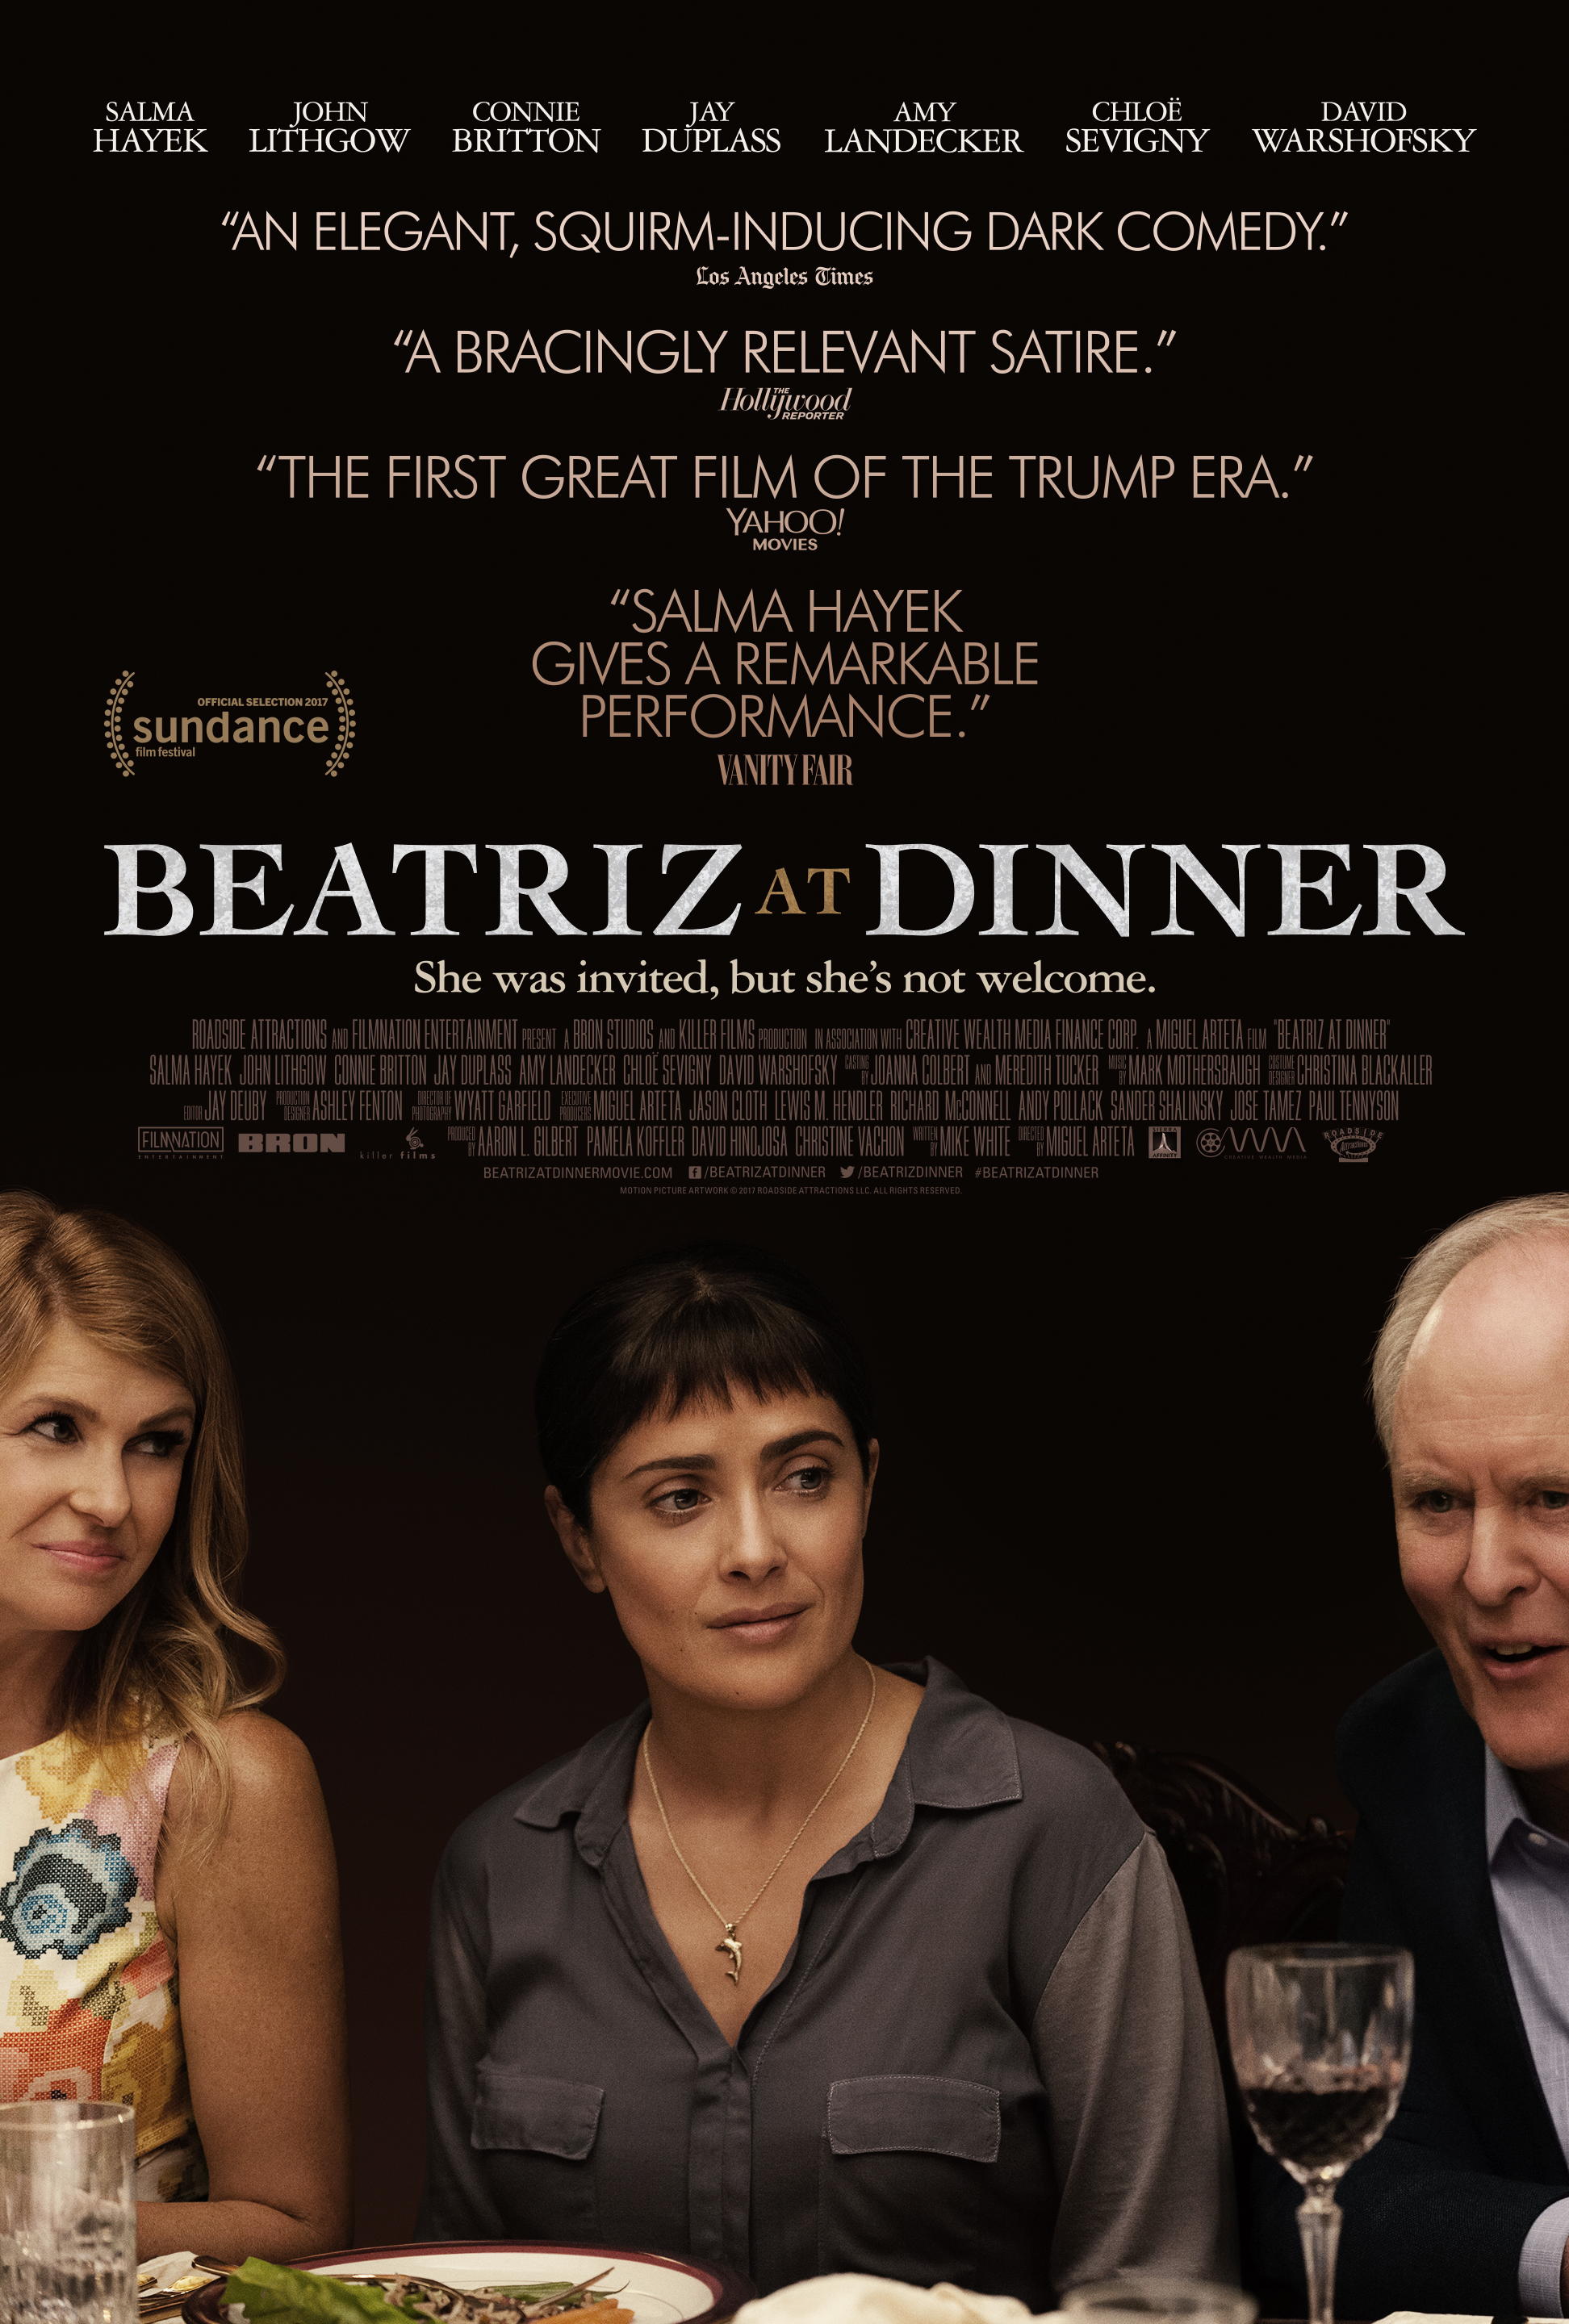 Nonton film Beatriz at Dinner layarkaca21 indoxx1 ganool online streaming terbaru